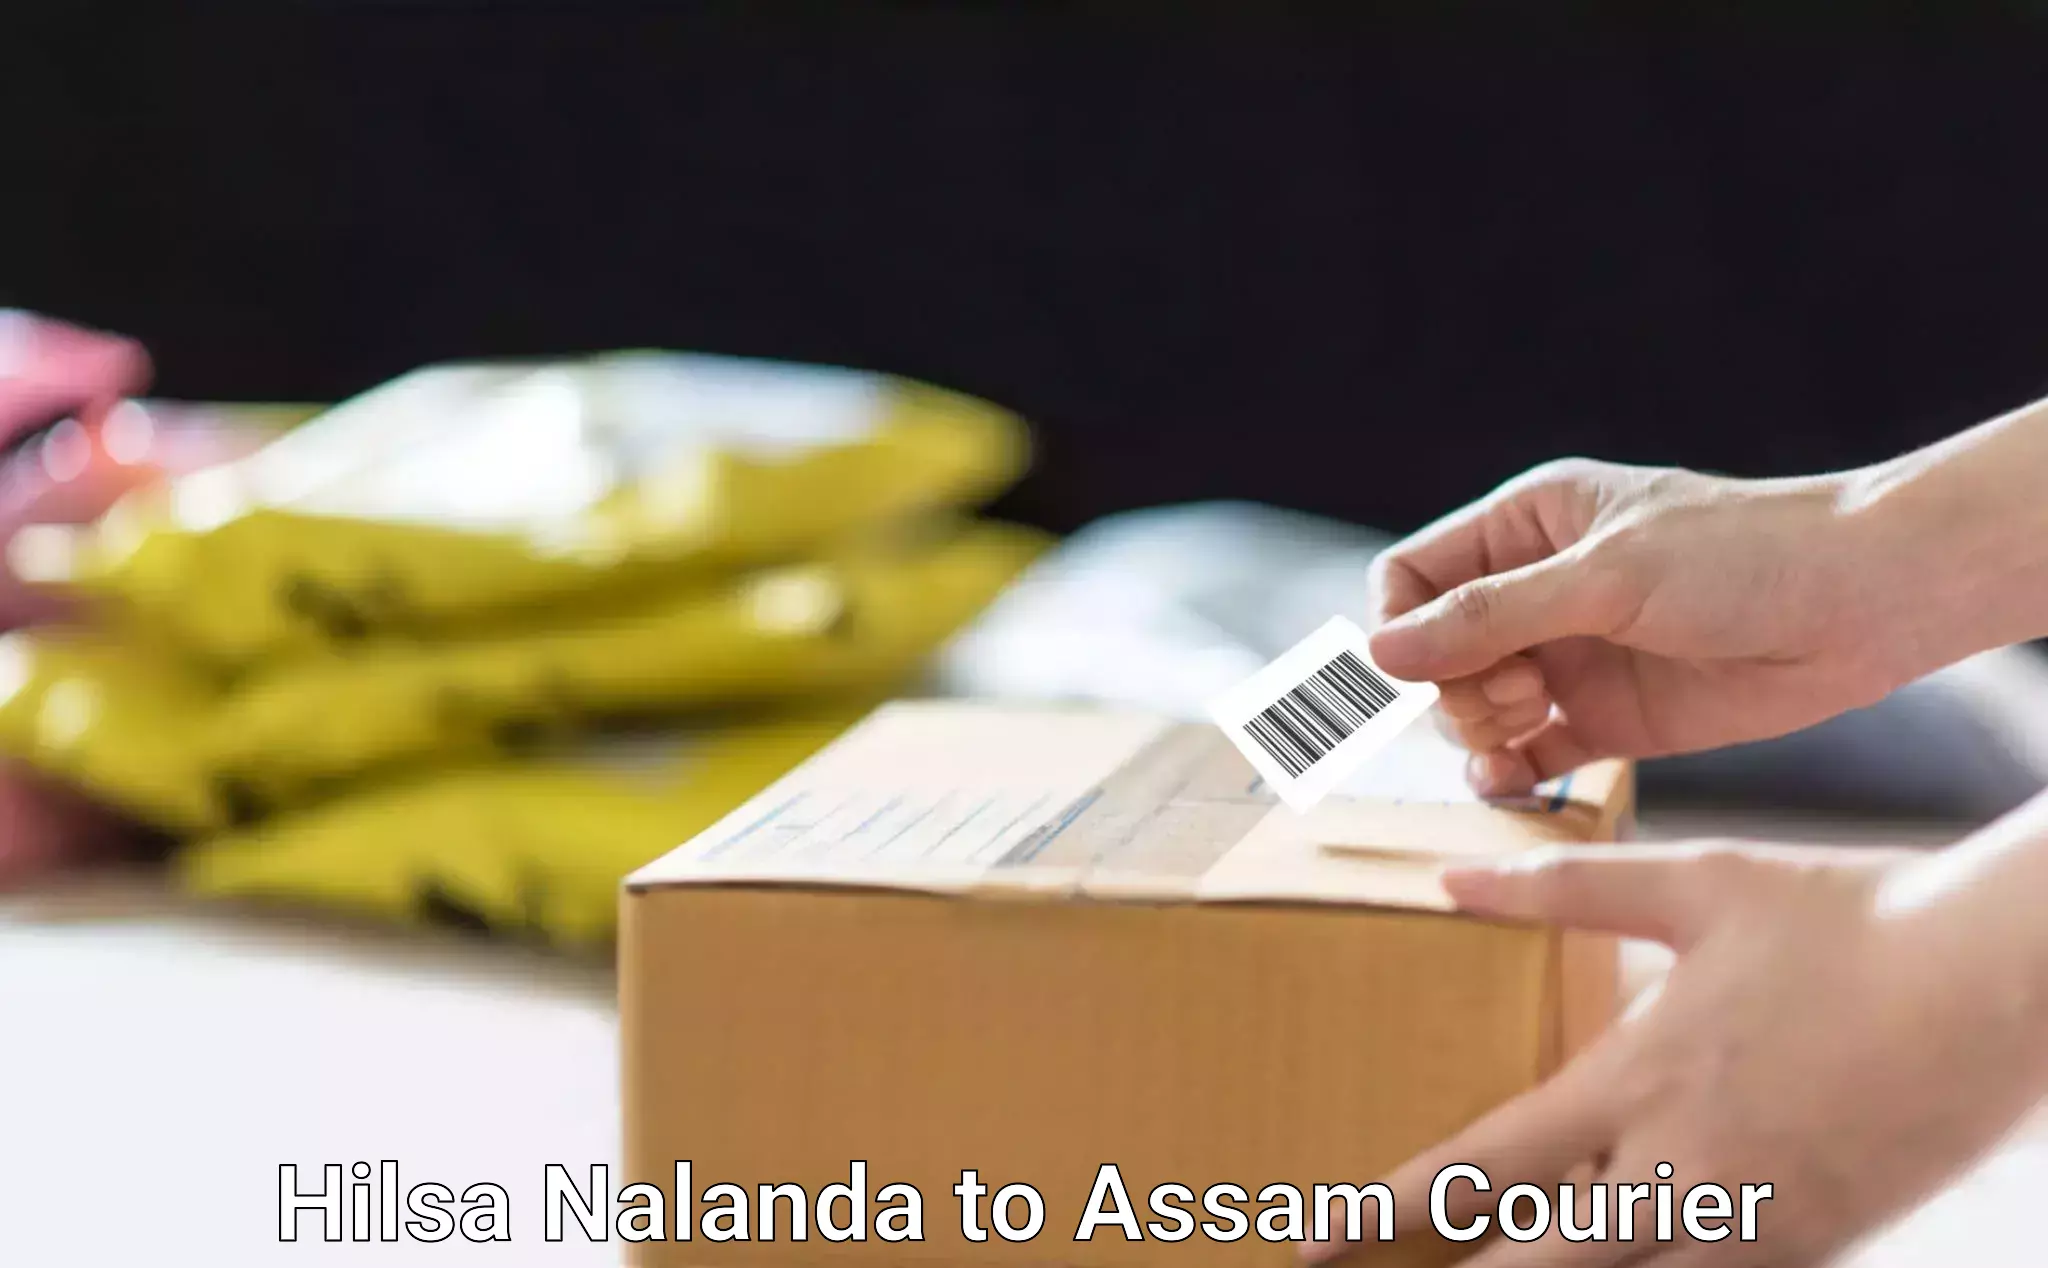 Furniture moving experts Hilsa Nalanda to Kalain